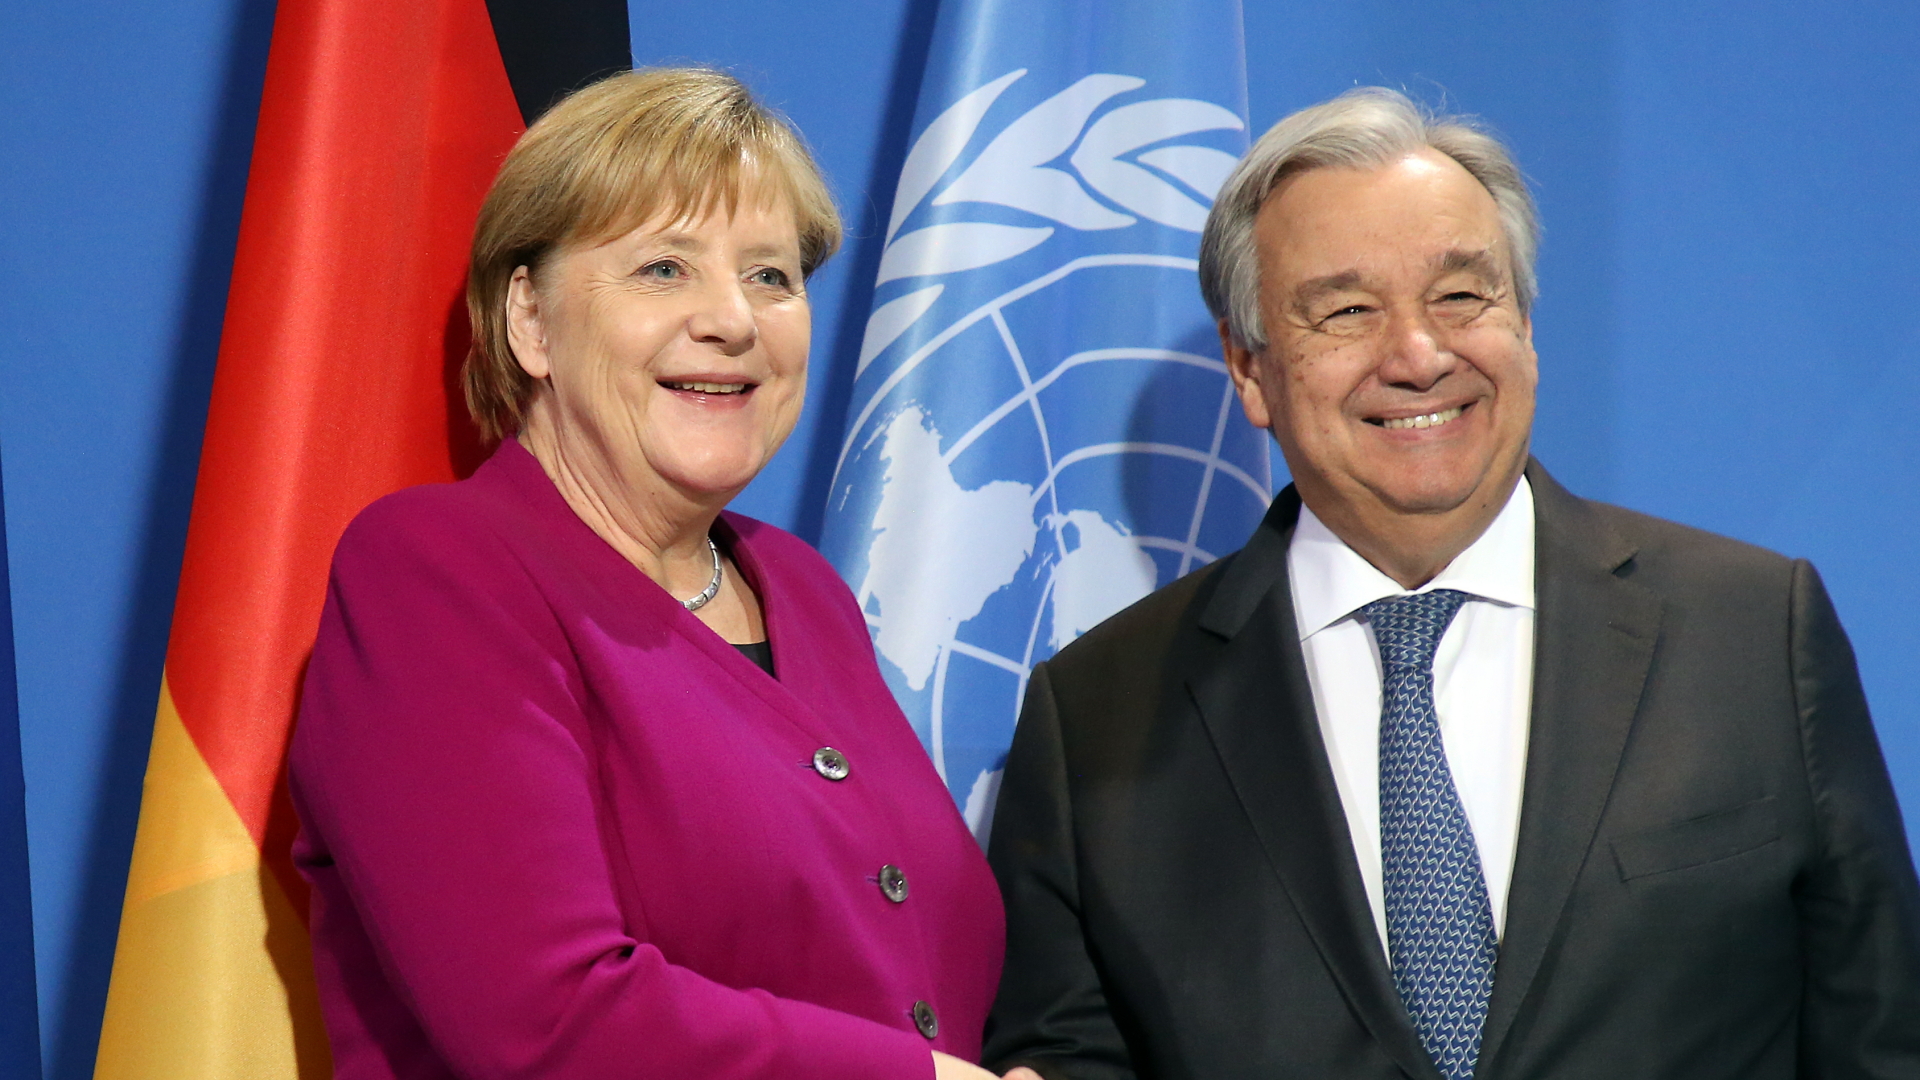 Bundeskanzlerin Angela Merkel (CDU) und Antonio Guterres, Generalsekretär der Vereinten Nationen, geben sich im Bundeskanzleramt die Hand (Archivbild). | dpa